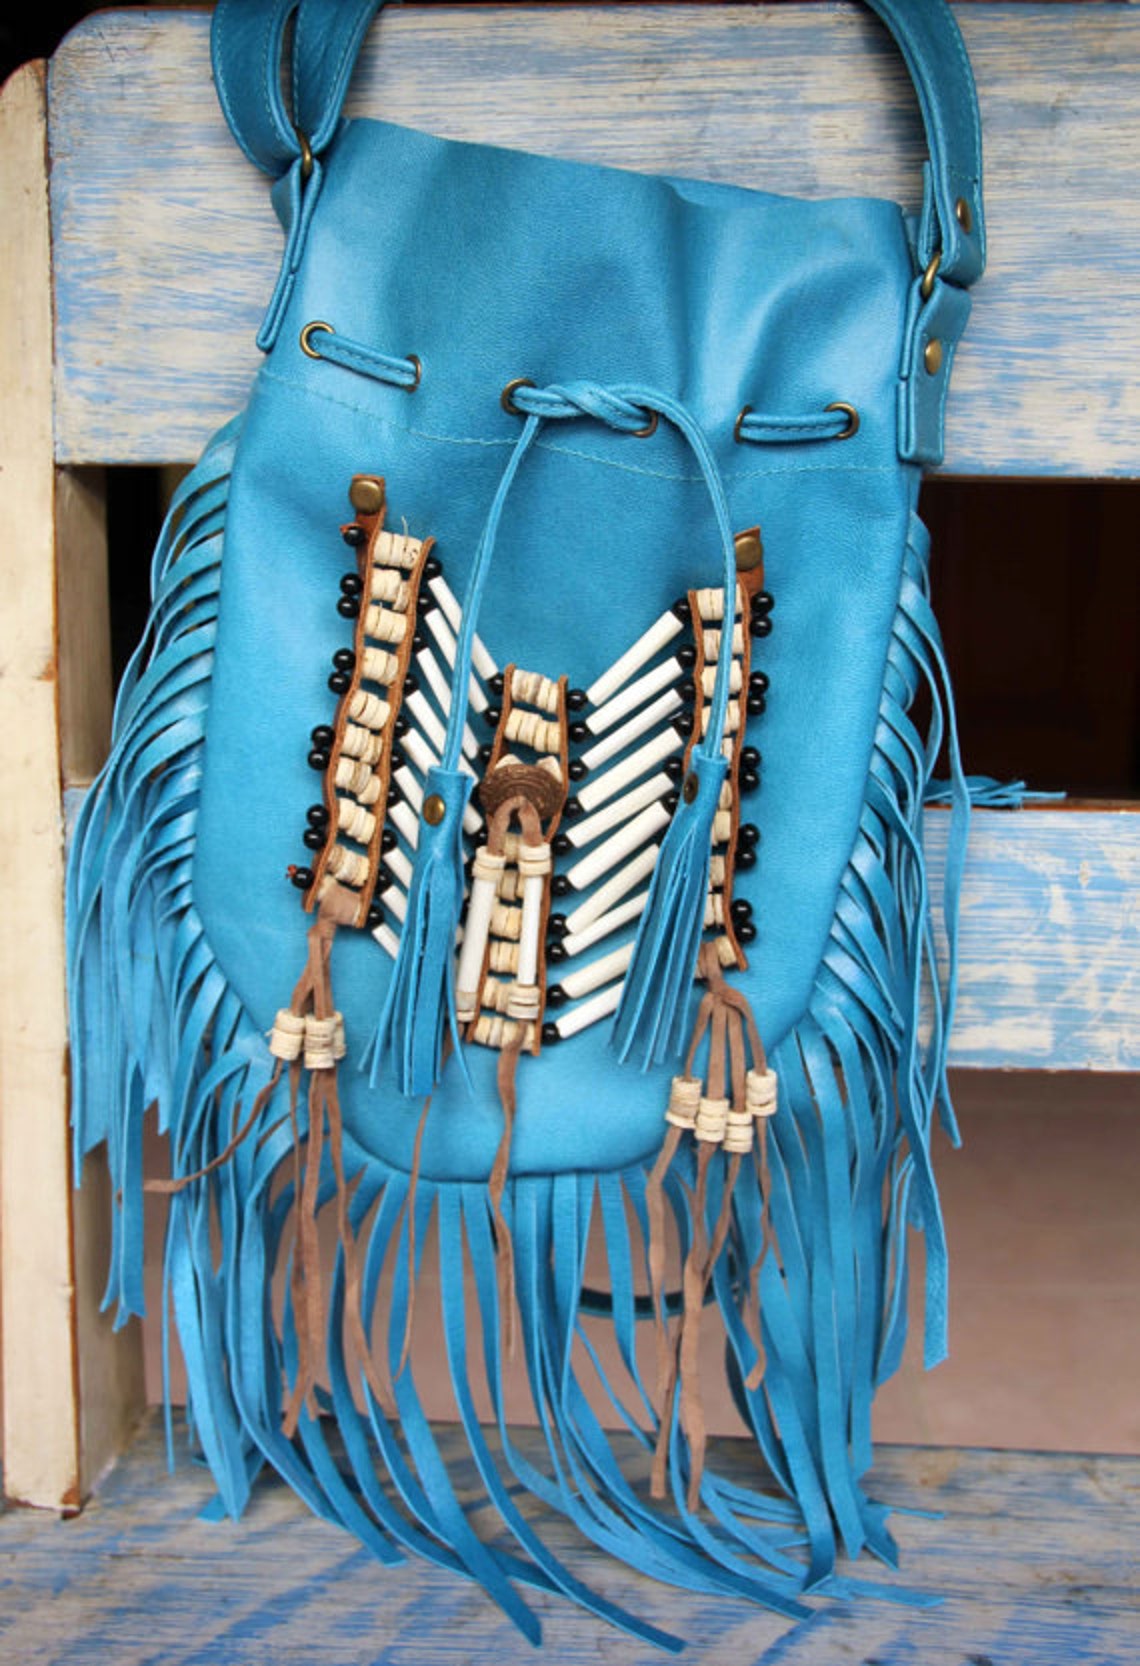 Fringed leather bag boho style turquoise leather purse gypsy | Etsy